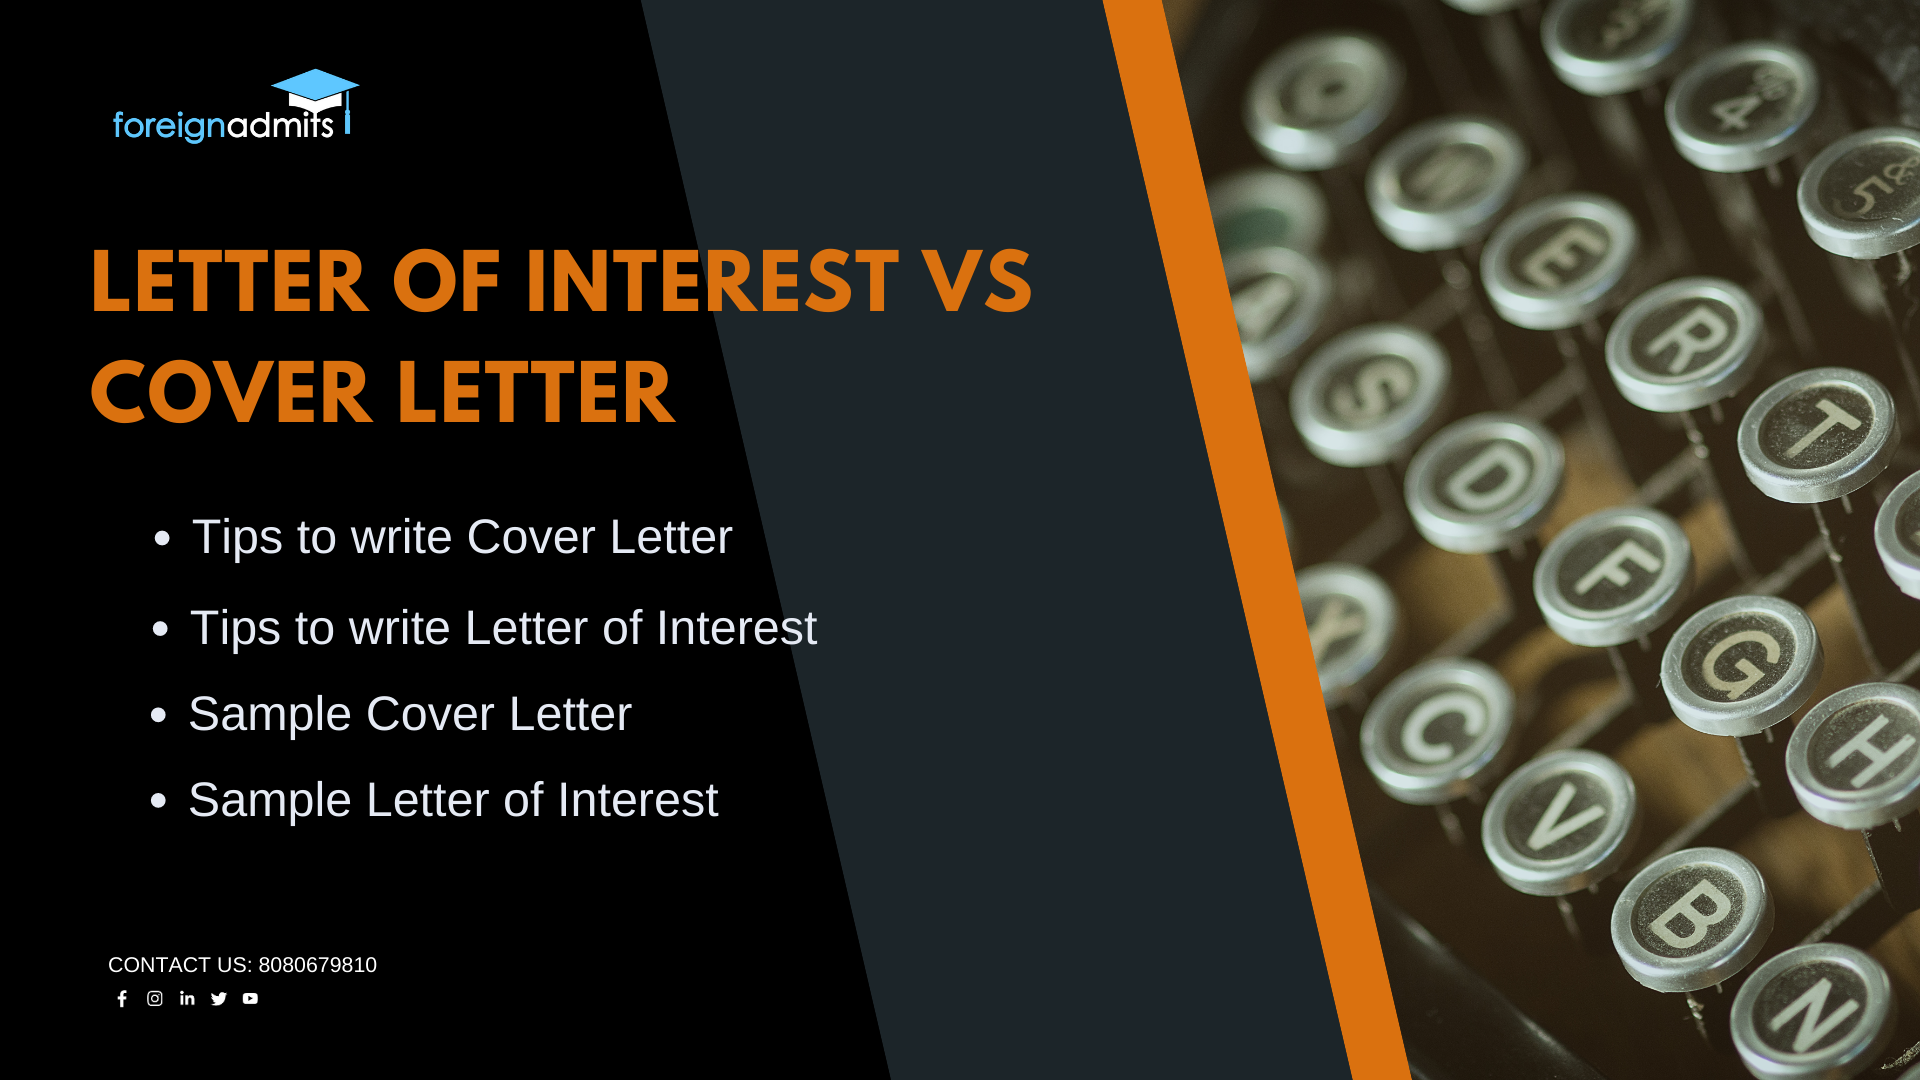 Letter of Interest VS Cover Letter